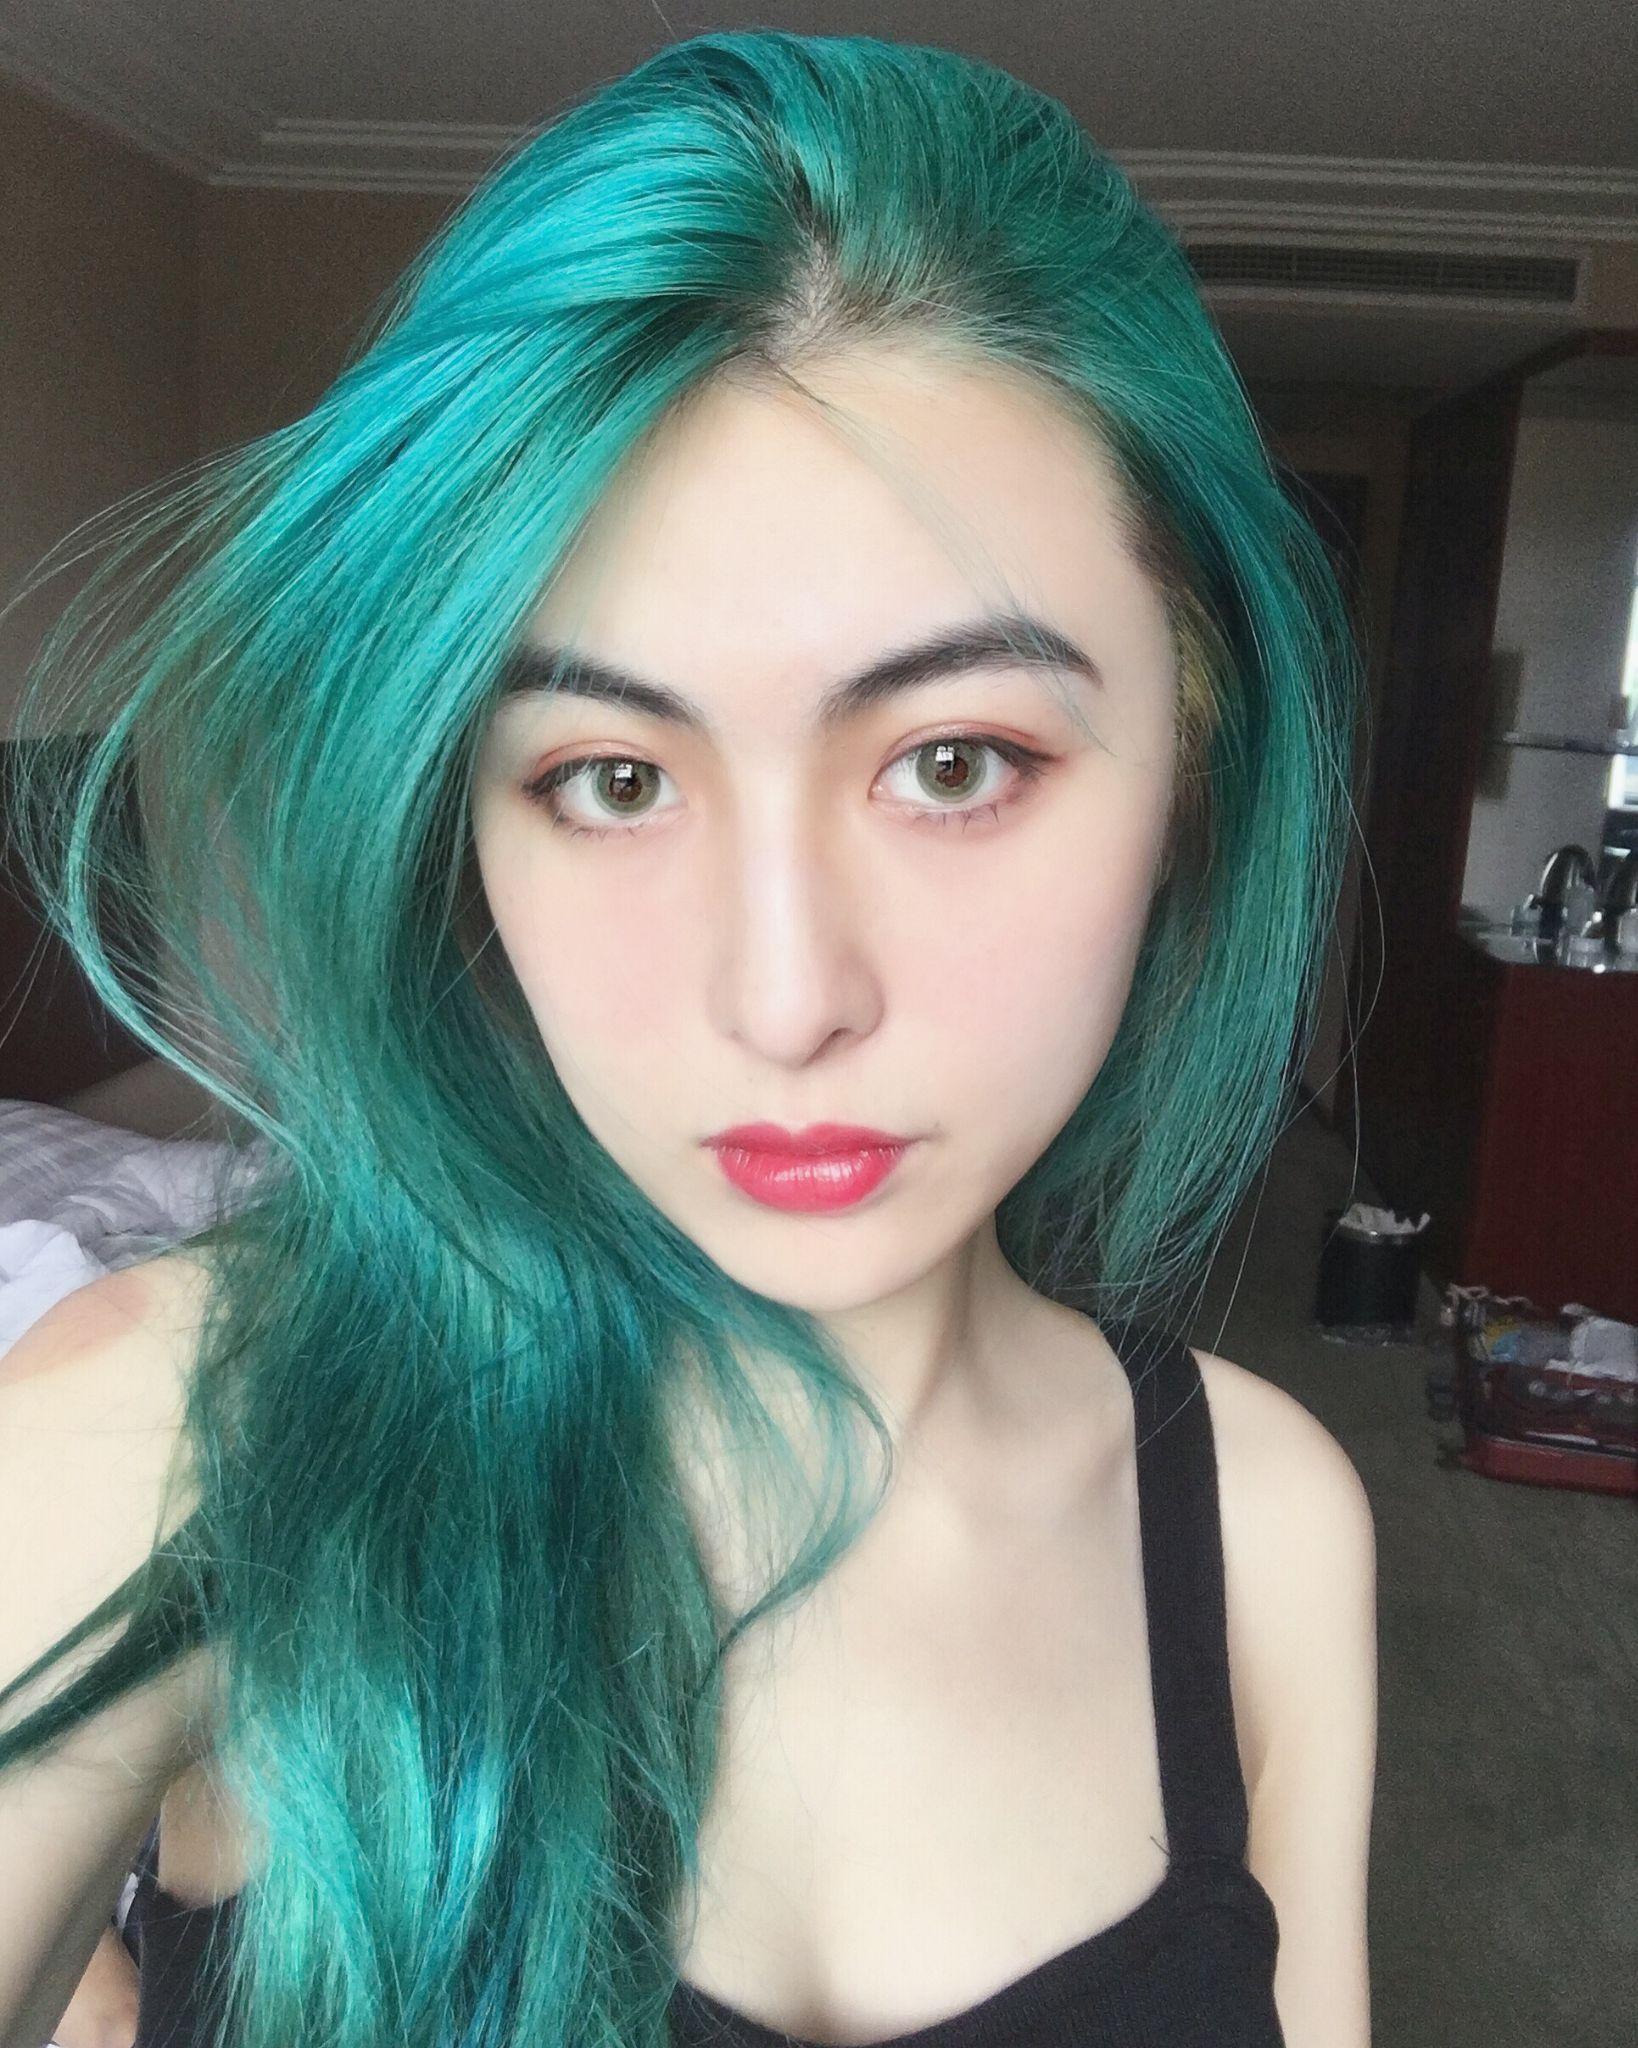 染蓝绿色的头发是种怎样的体验?